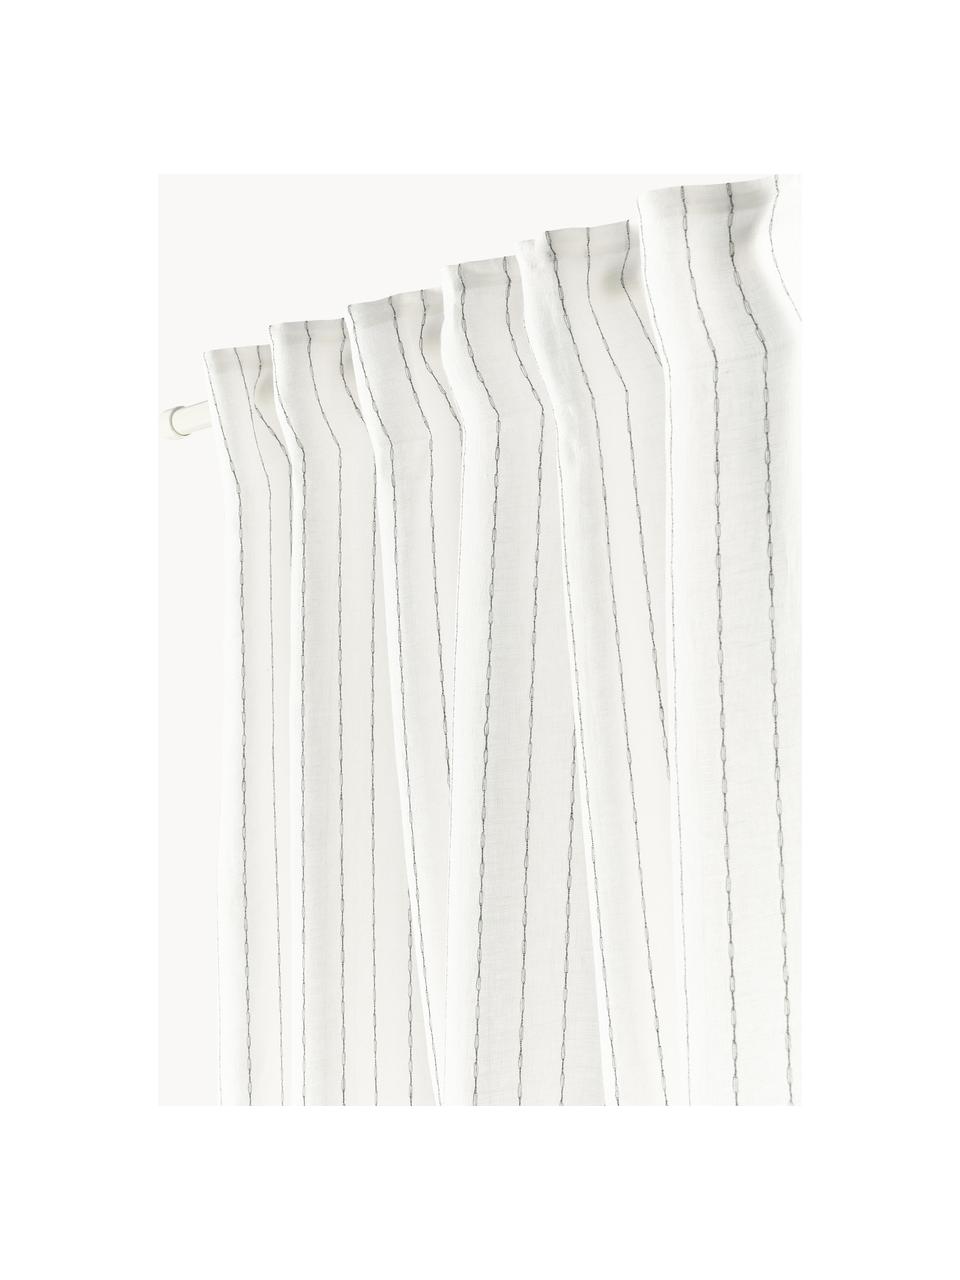 Halbtransparente Gardine Birch mit Multiband, 2 Stück, 100 % Leinen, Off White, B 130 x L 260 cm